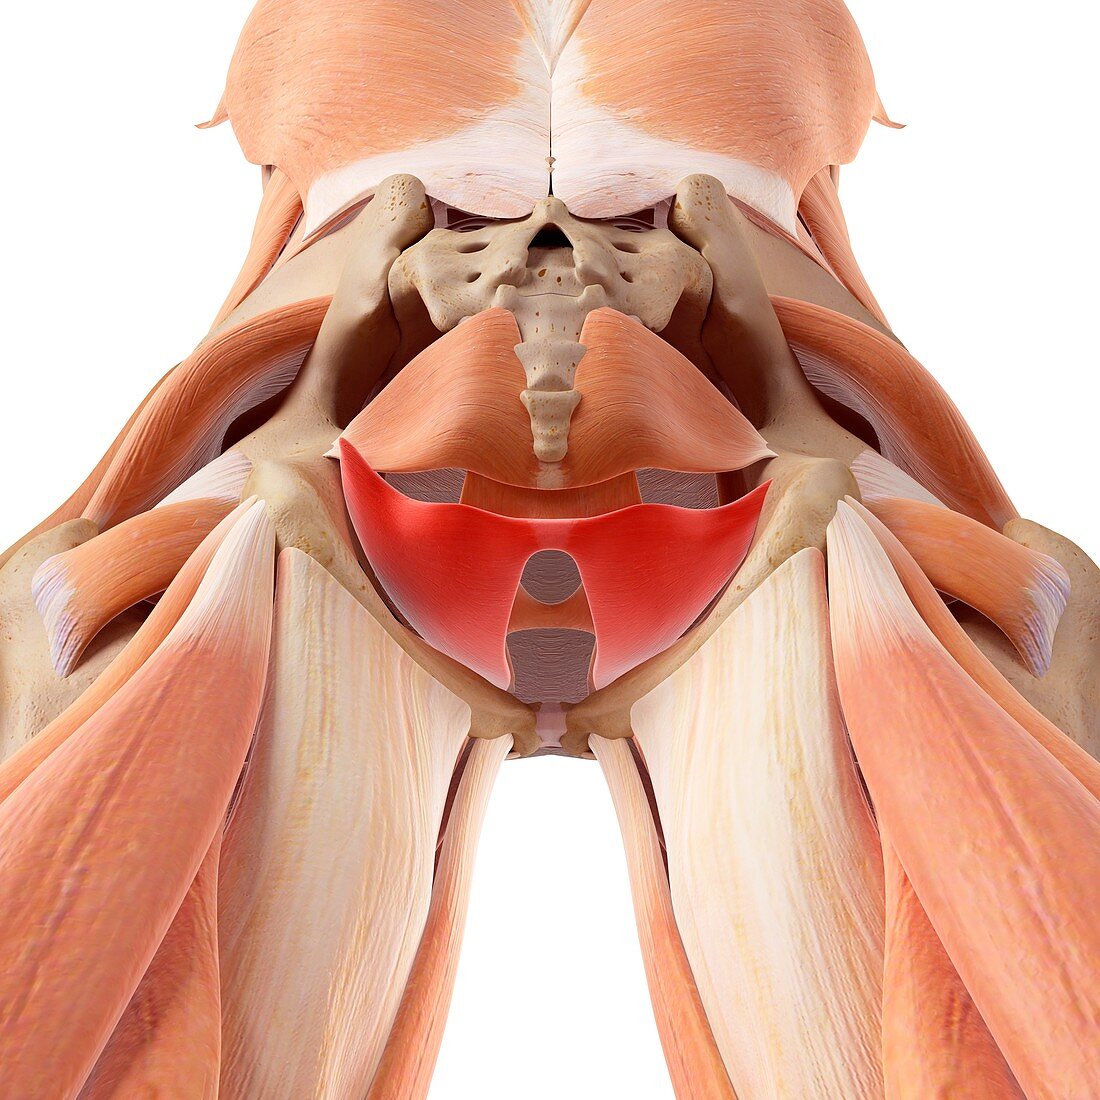 Pelvic muscles